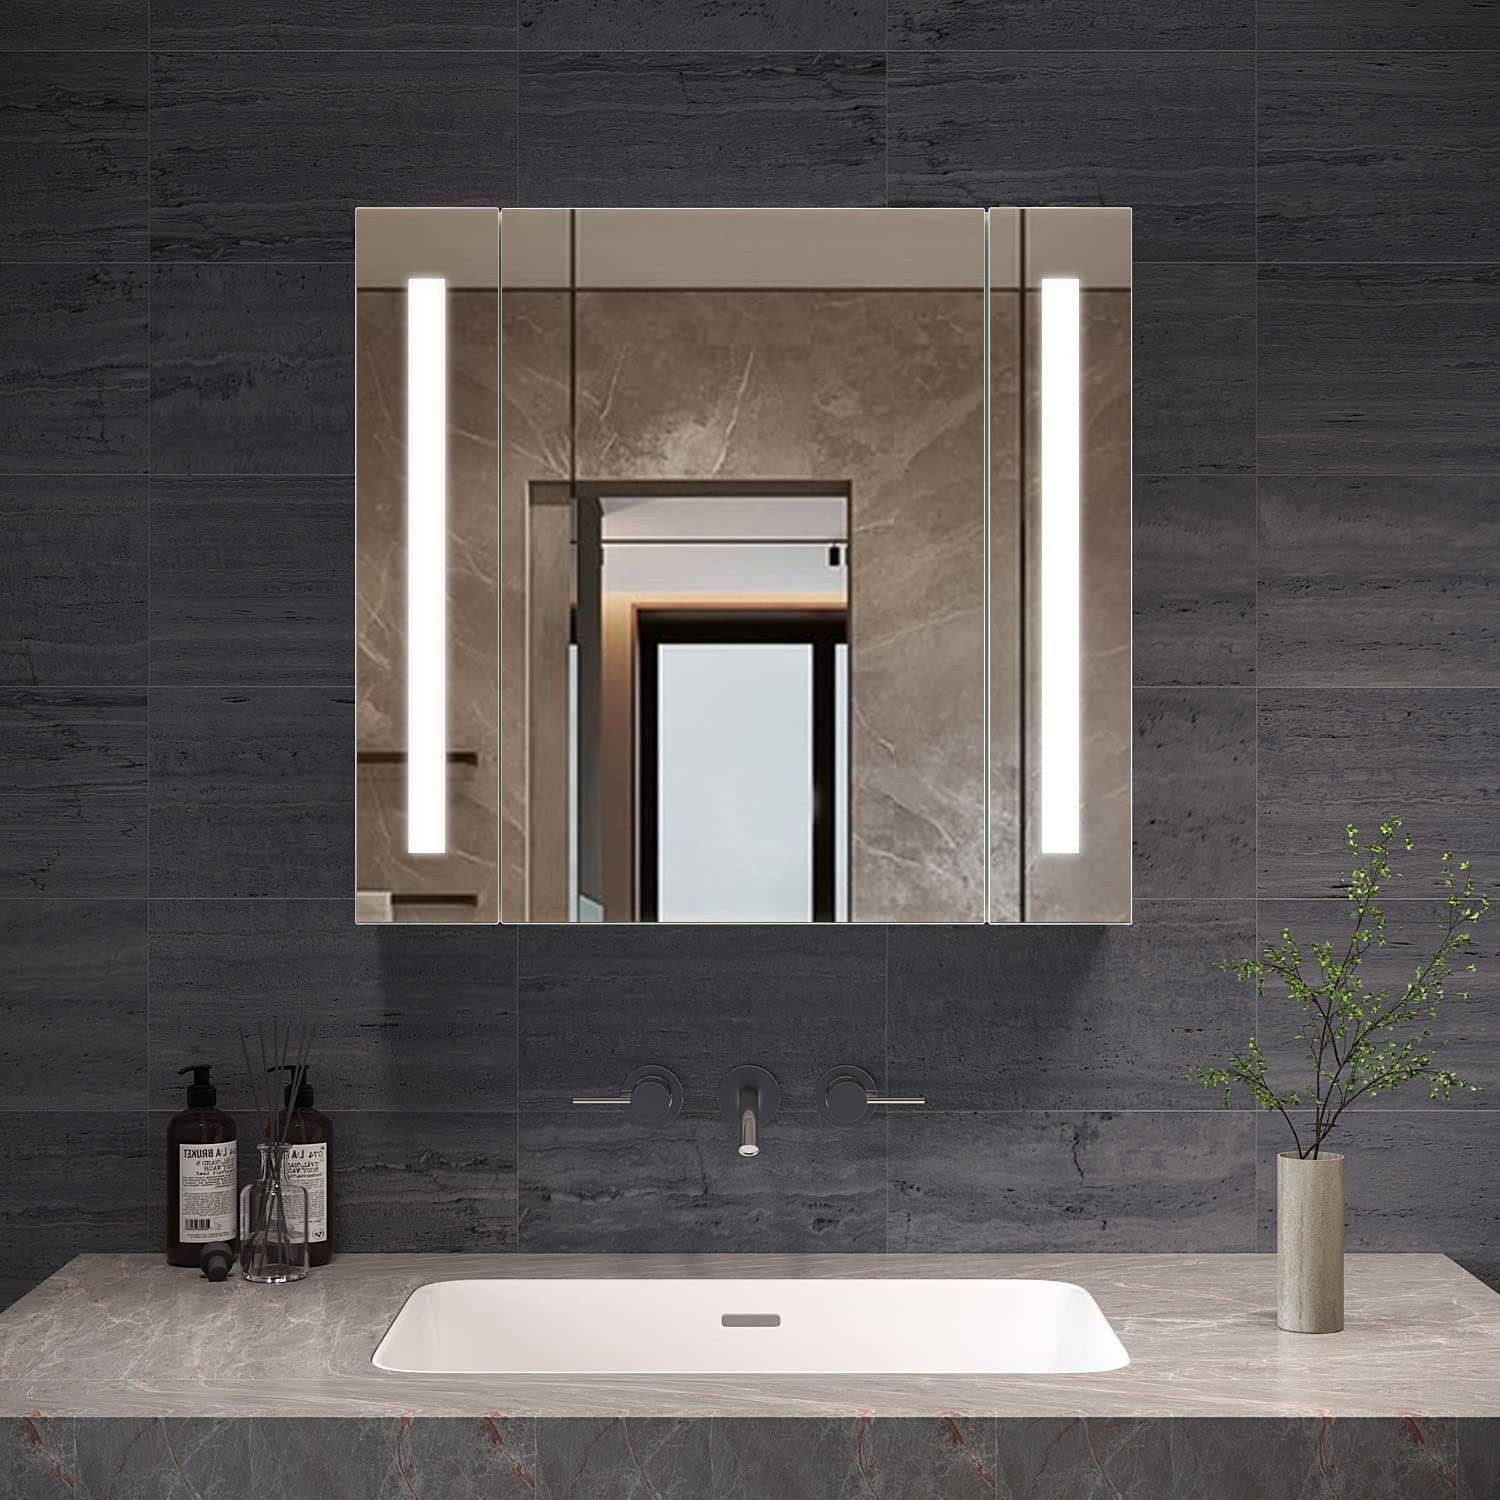 AQUABATOS Badezimmerspiegelschrank Spiegelschrank Bad LED mit Steckdose 60cm 80cm Kaltweiß, IR Sensor, Soft-Close-Funktion, antibeschlag